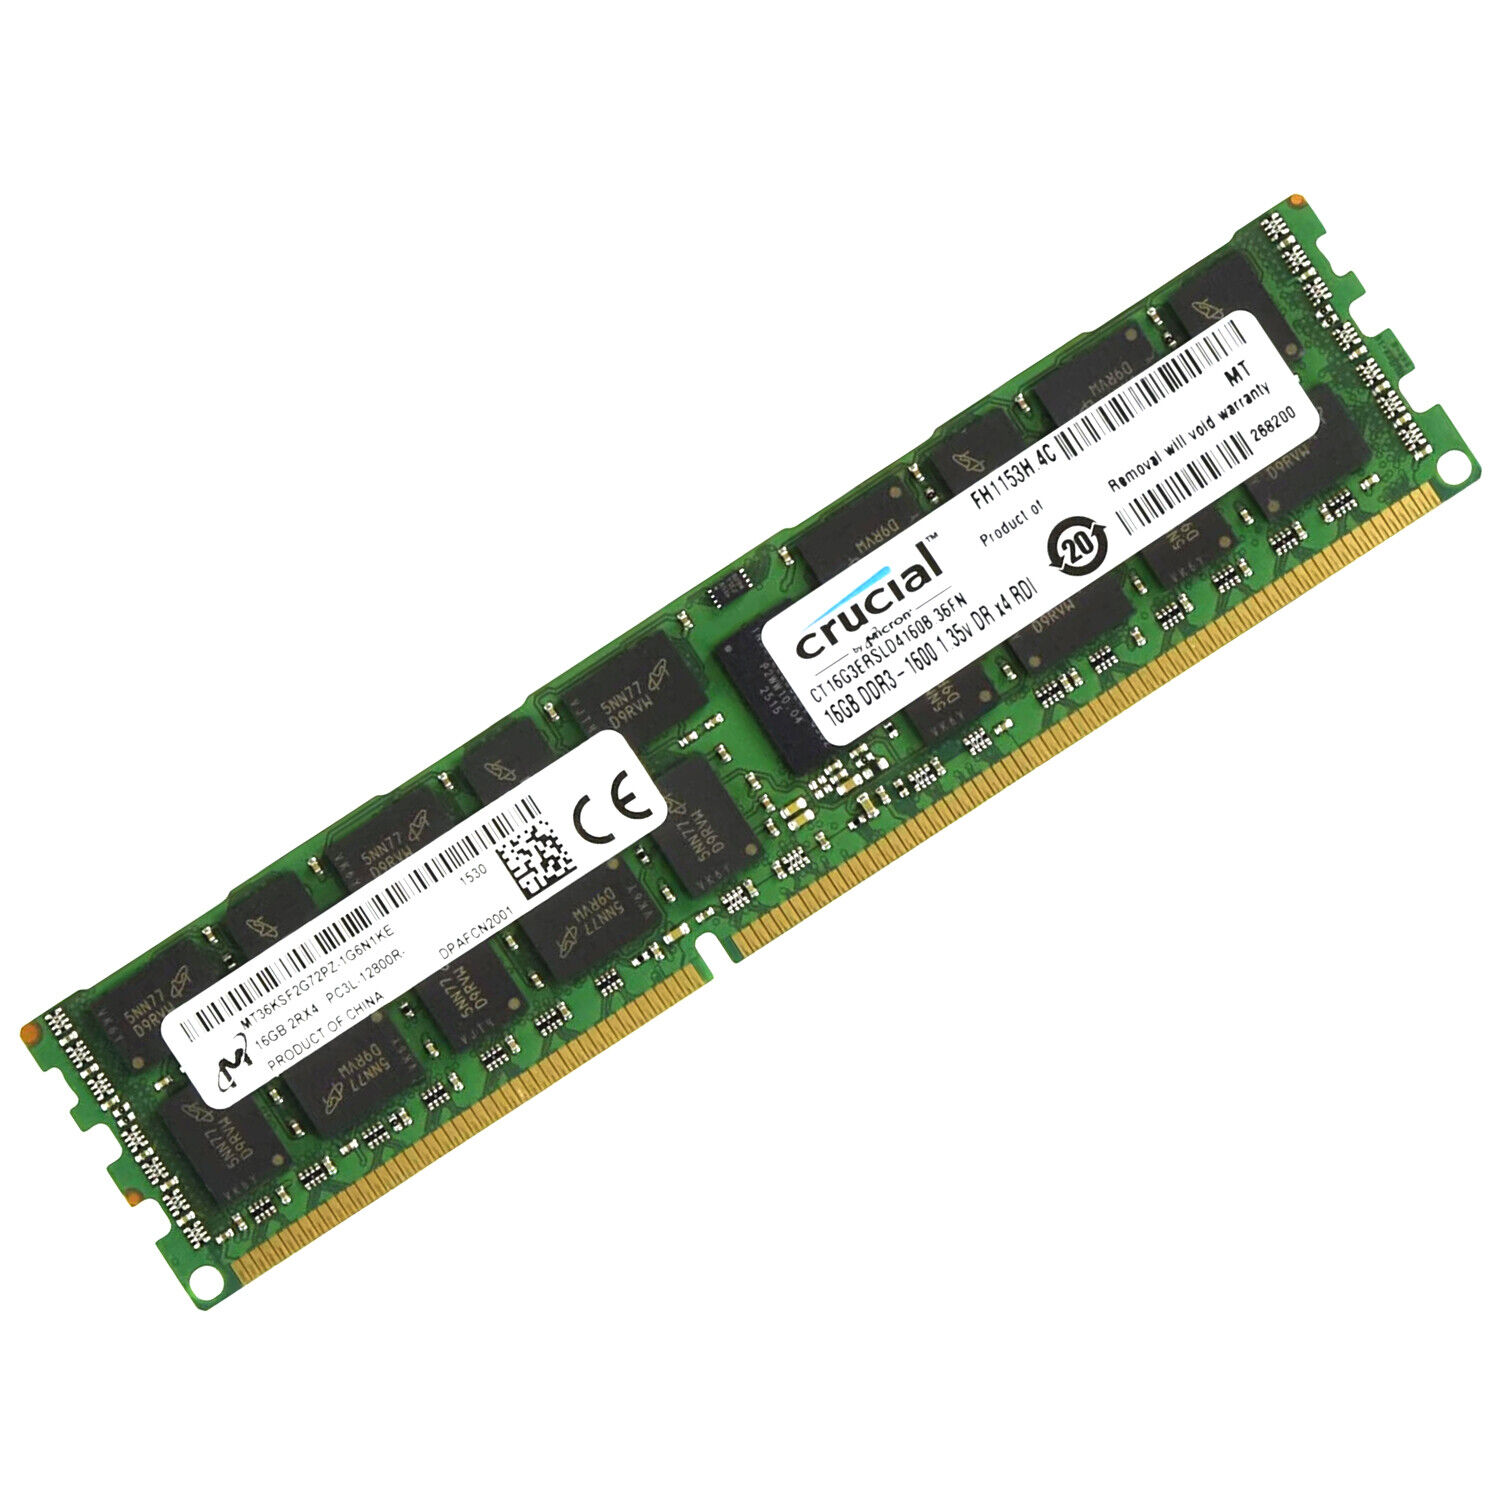 Crucial 16GB DDR3L 1600Mhz PC3L-12800 RDIMM 1.35V RAM Memory CT16G3ERSLD4160B